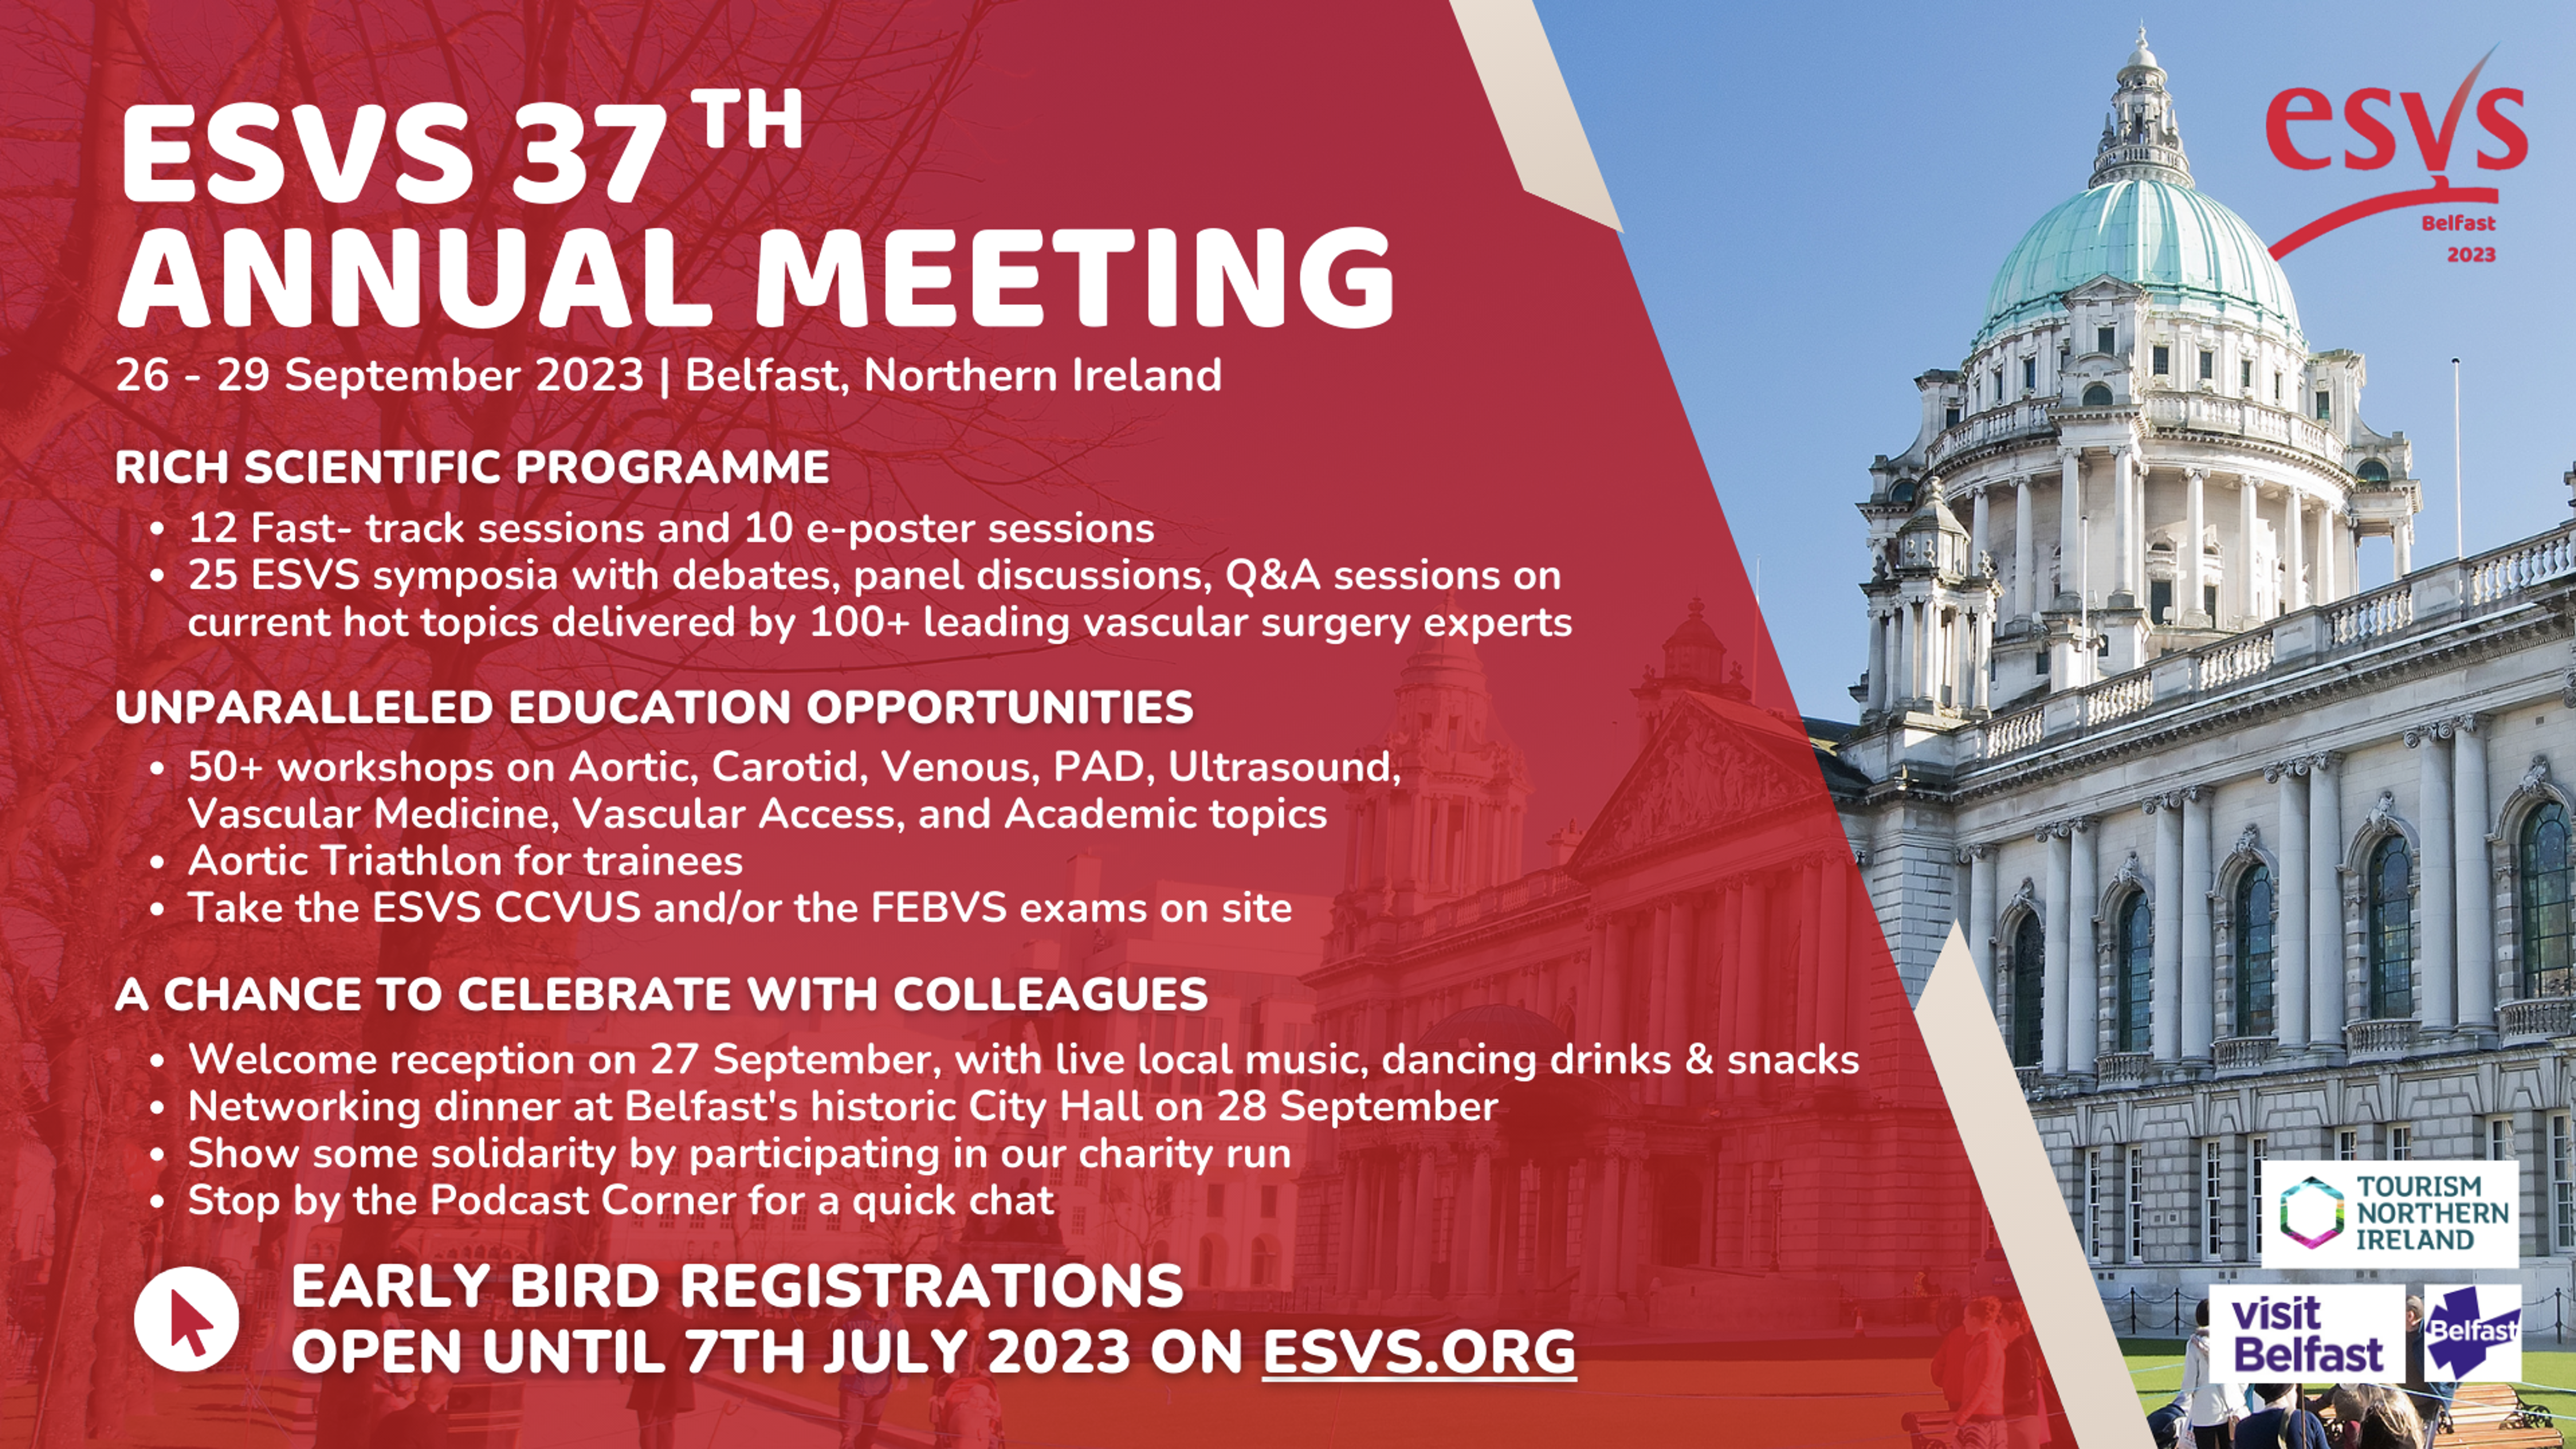 ESVS Annual Meeting 2023